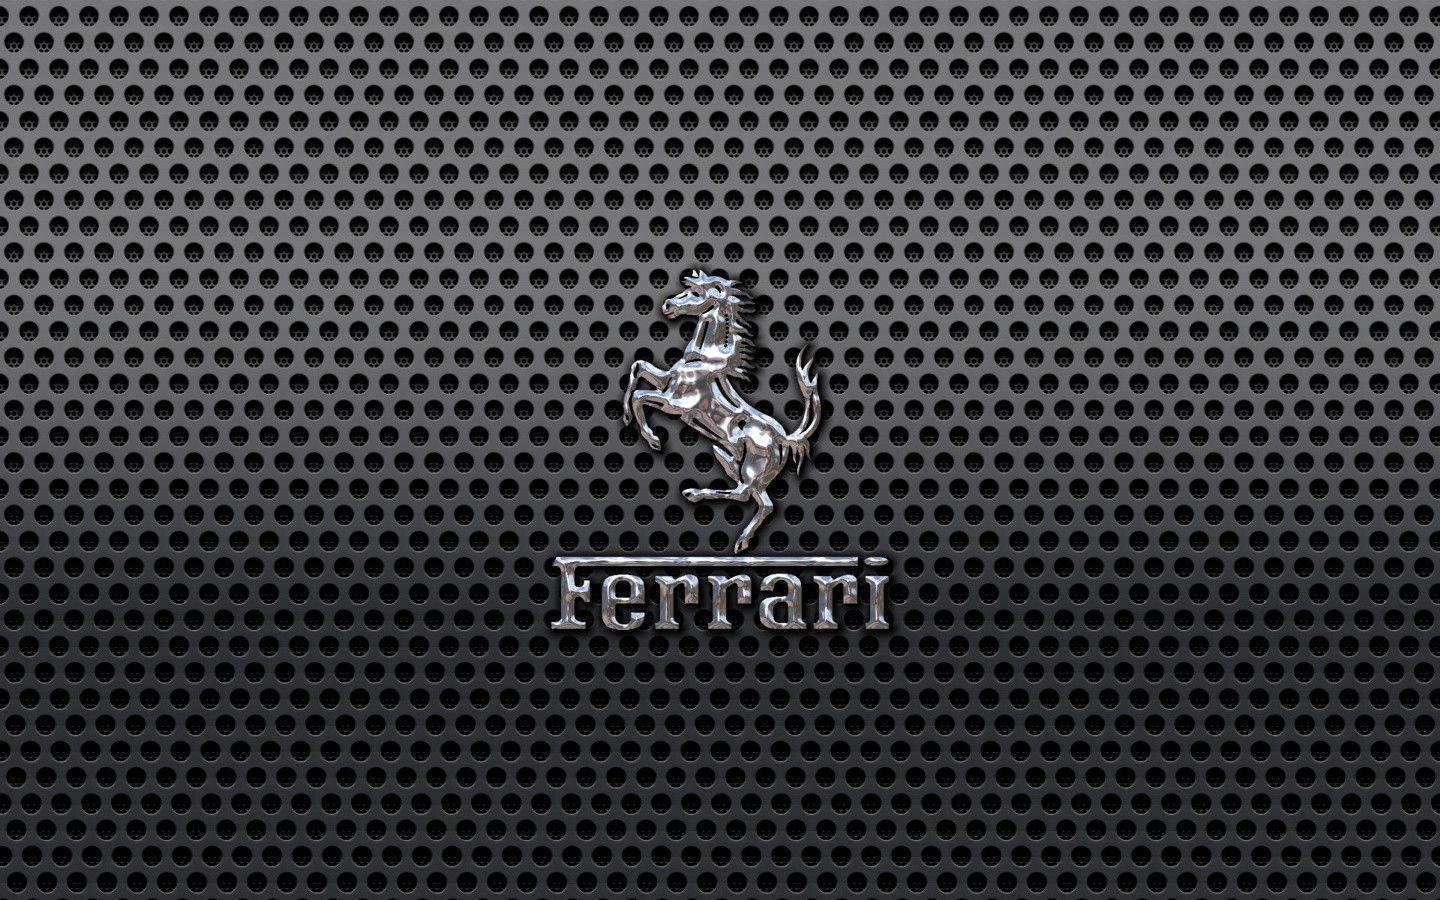 Metal Ferrari Logo Wallpapers For Desktop 2634 Wallpapers